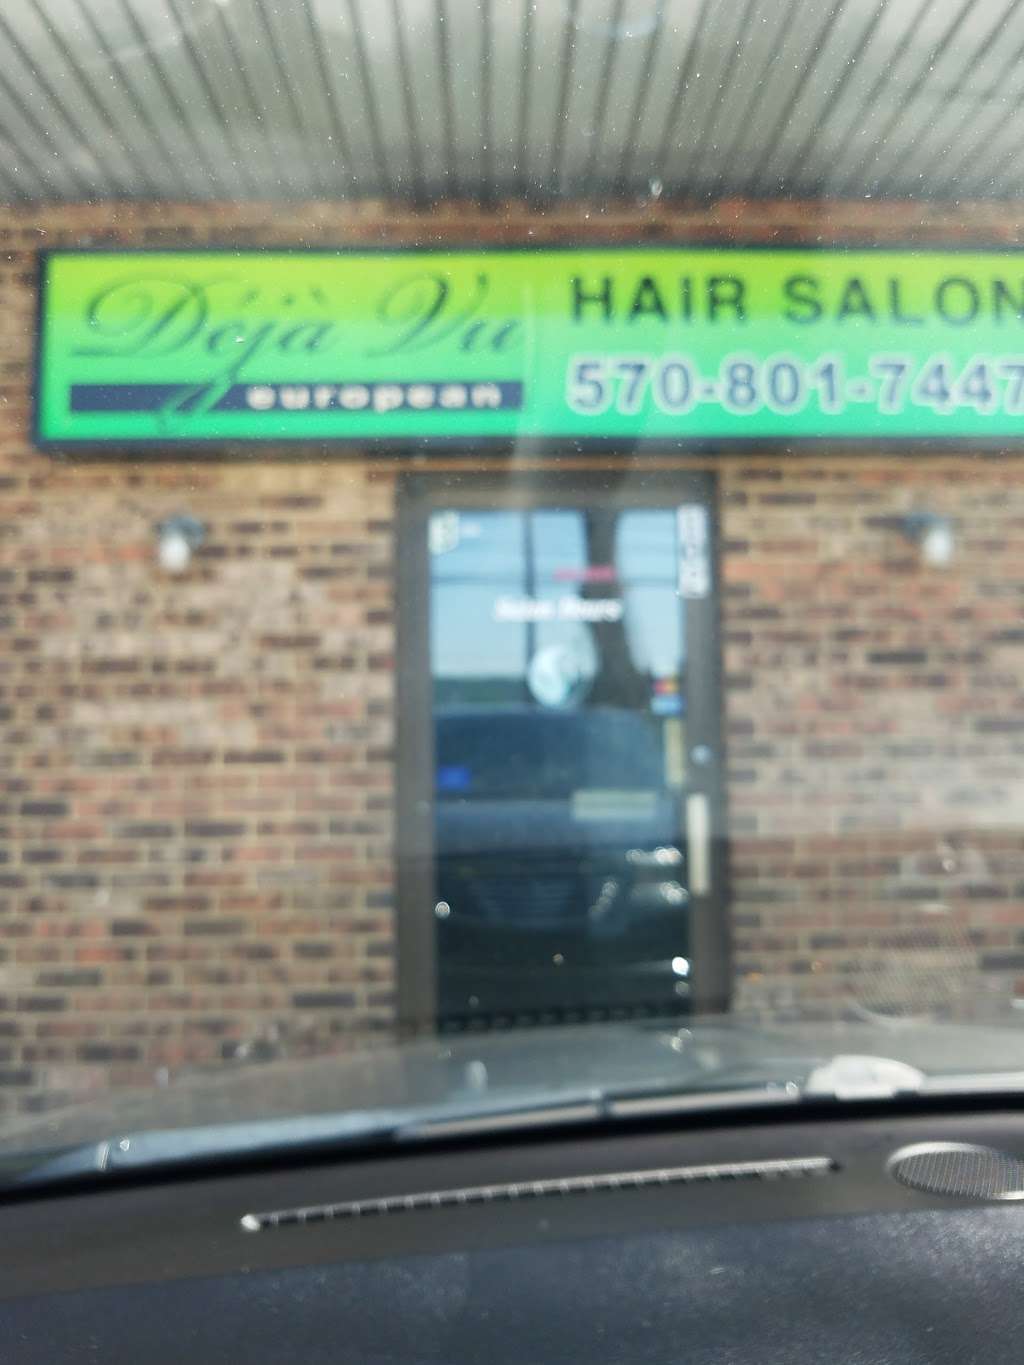 Deja Vu European Hair Salon | 2138 PA-115, Brodheadsville, PA 18322 | Phone: (570) 801-7447